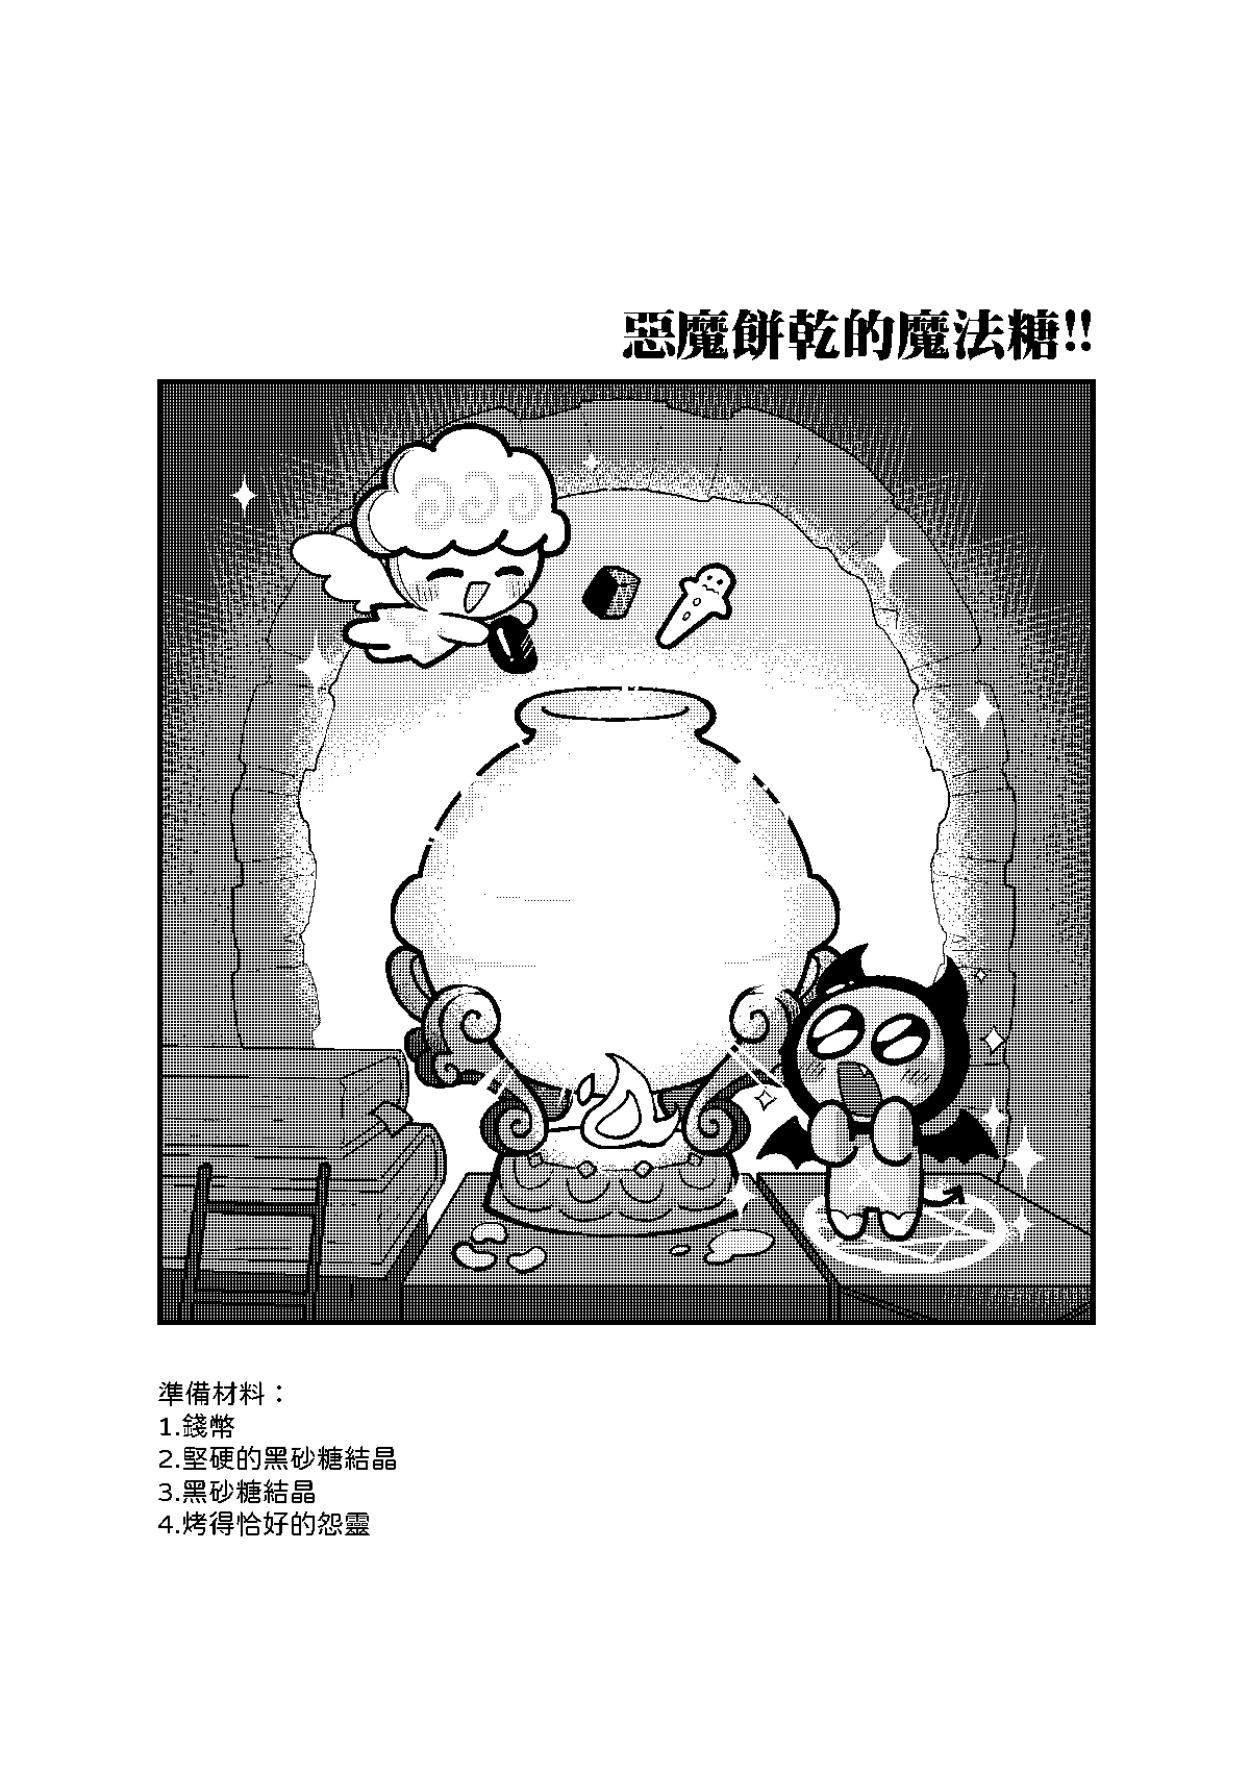 Yī qǐlái zuò tángshuāng bǐnggān ba 2 | "Let's make icing cookies 2" 4